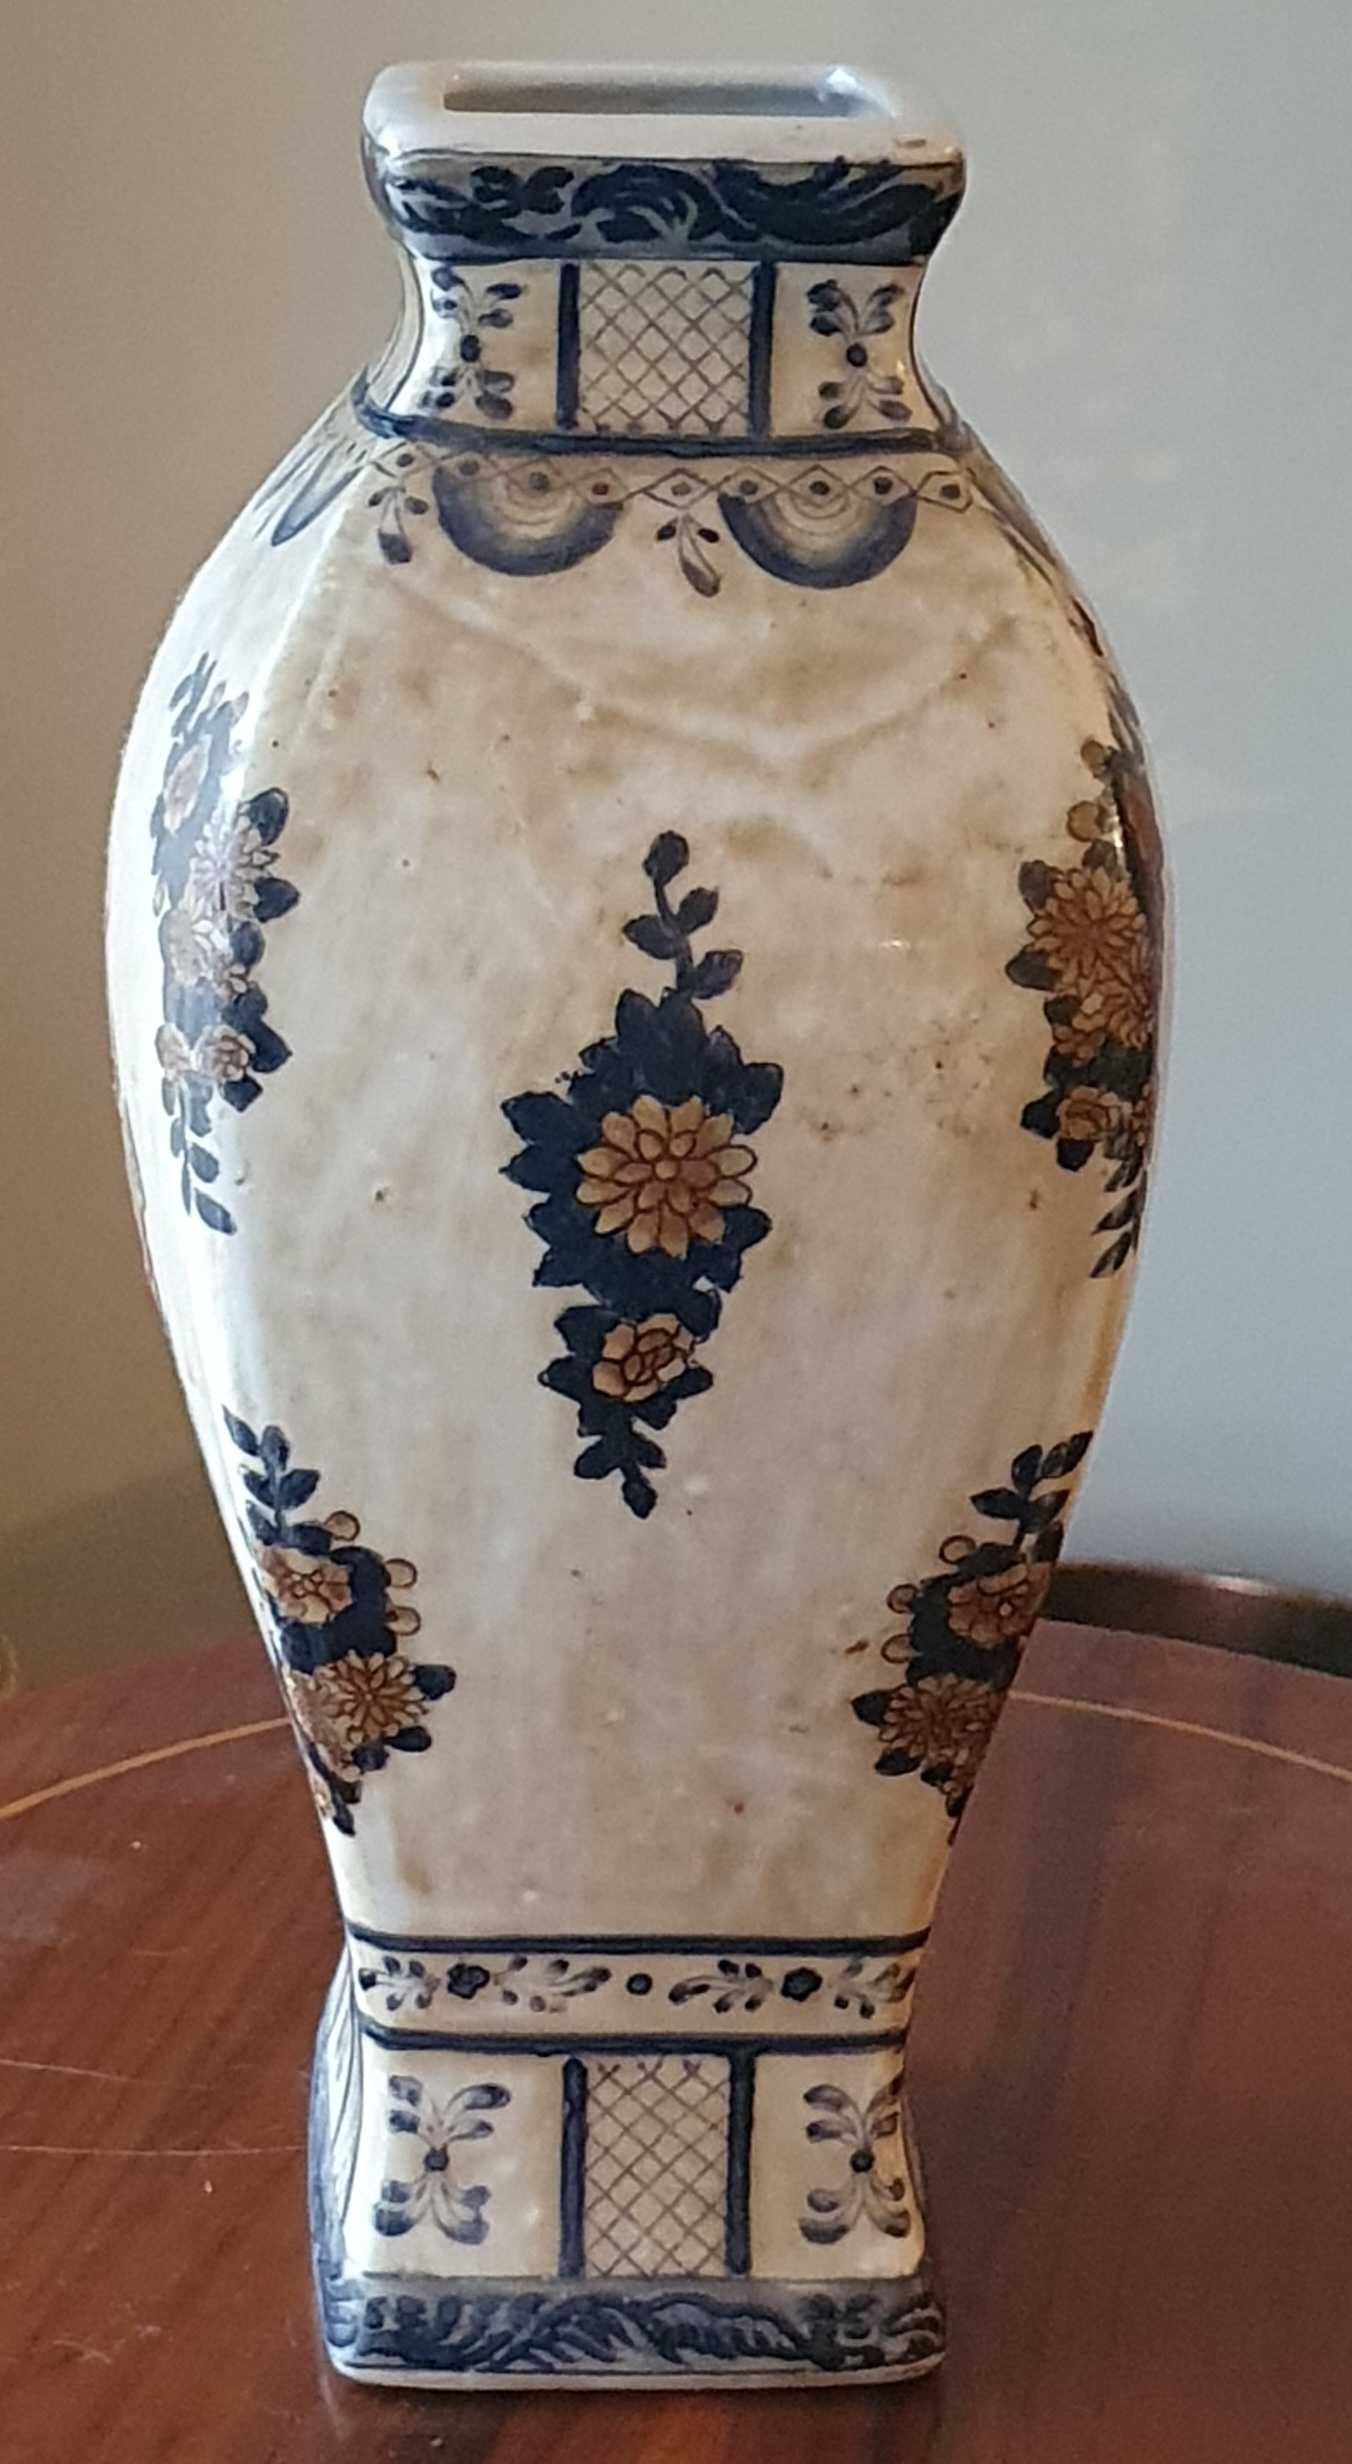 Jarra de Porcelana pintada à mão com brasão de Portugal.